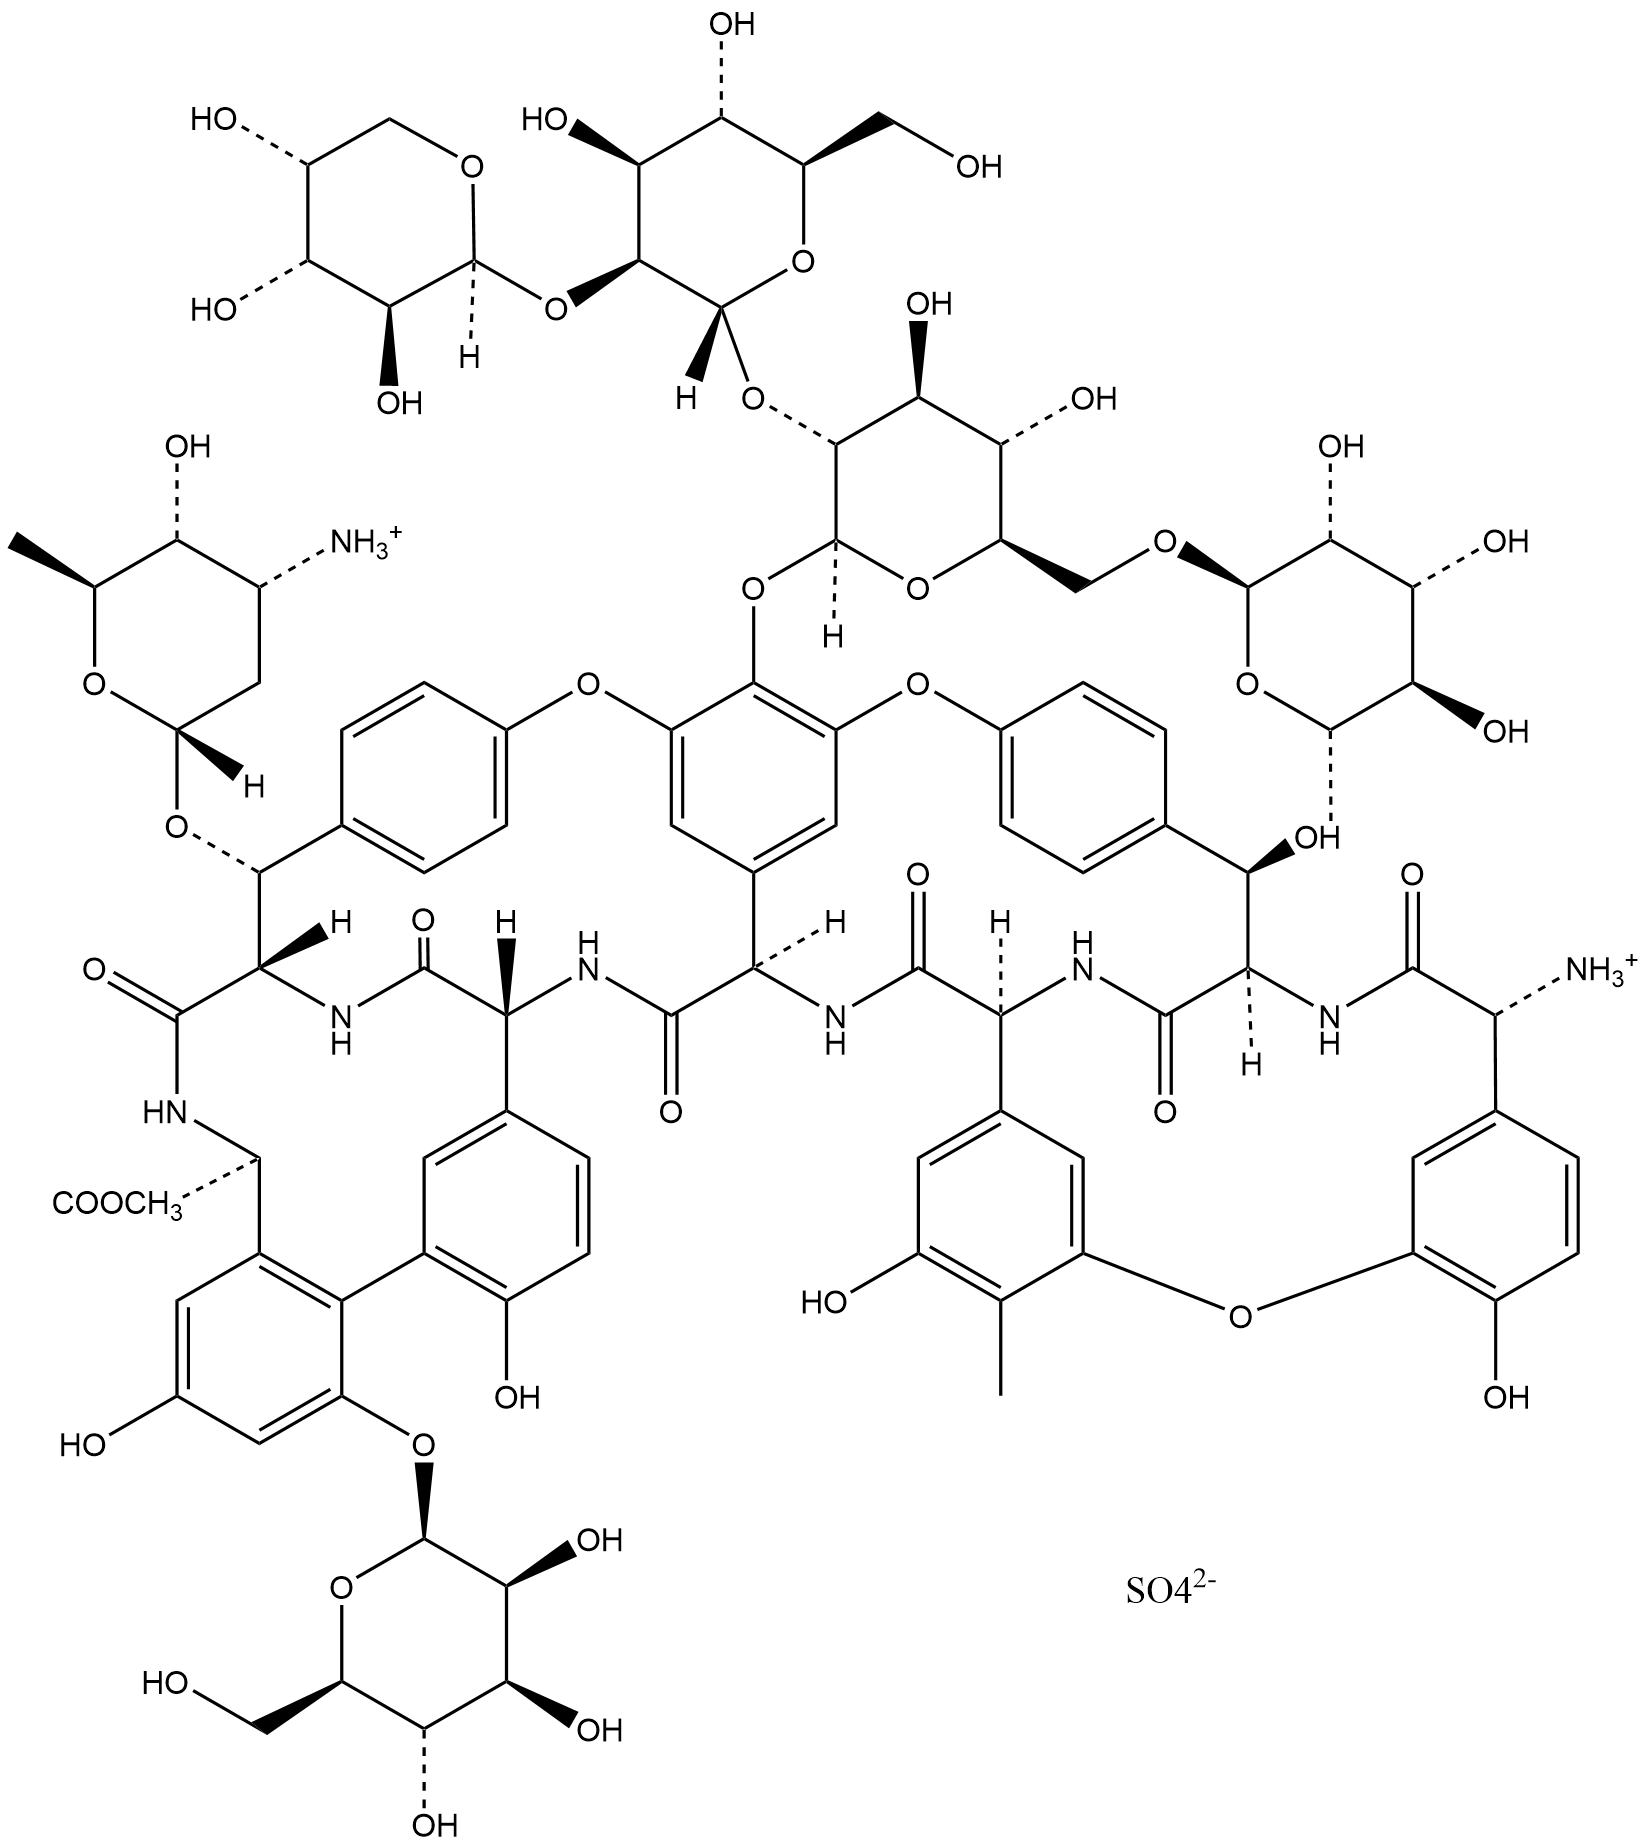 Ristocetin A (sulfate)